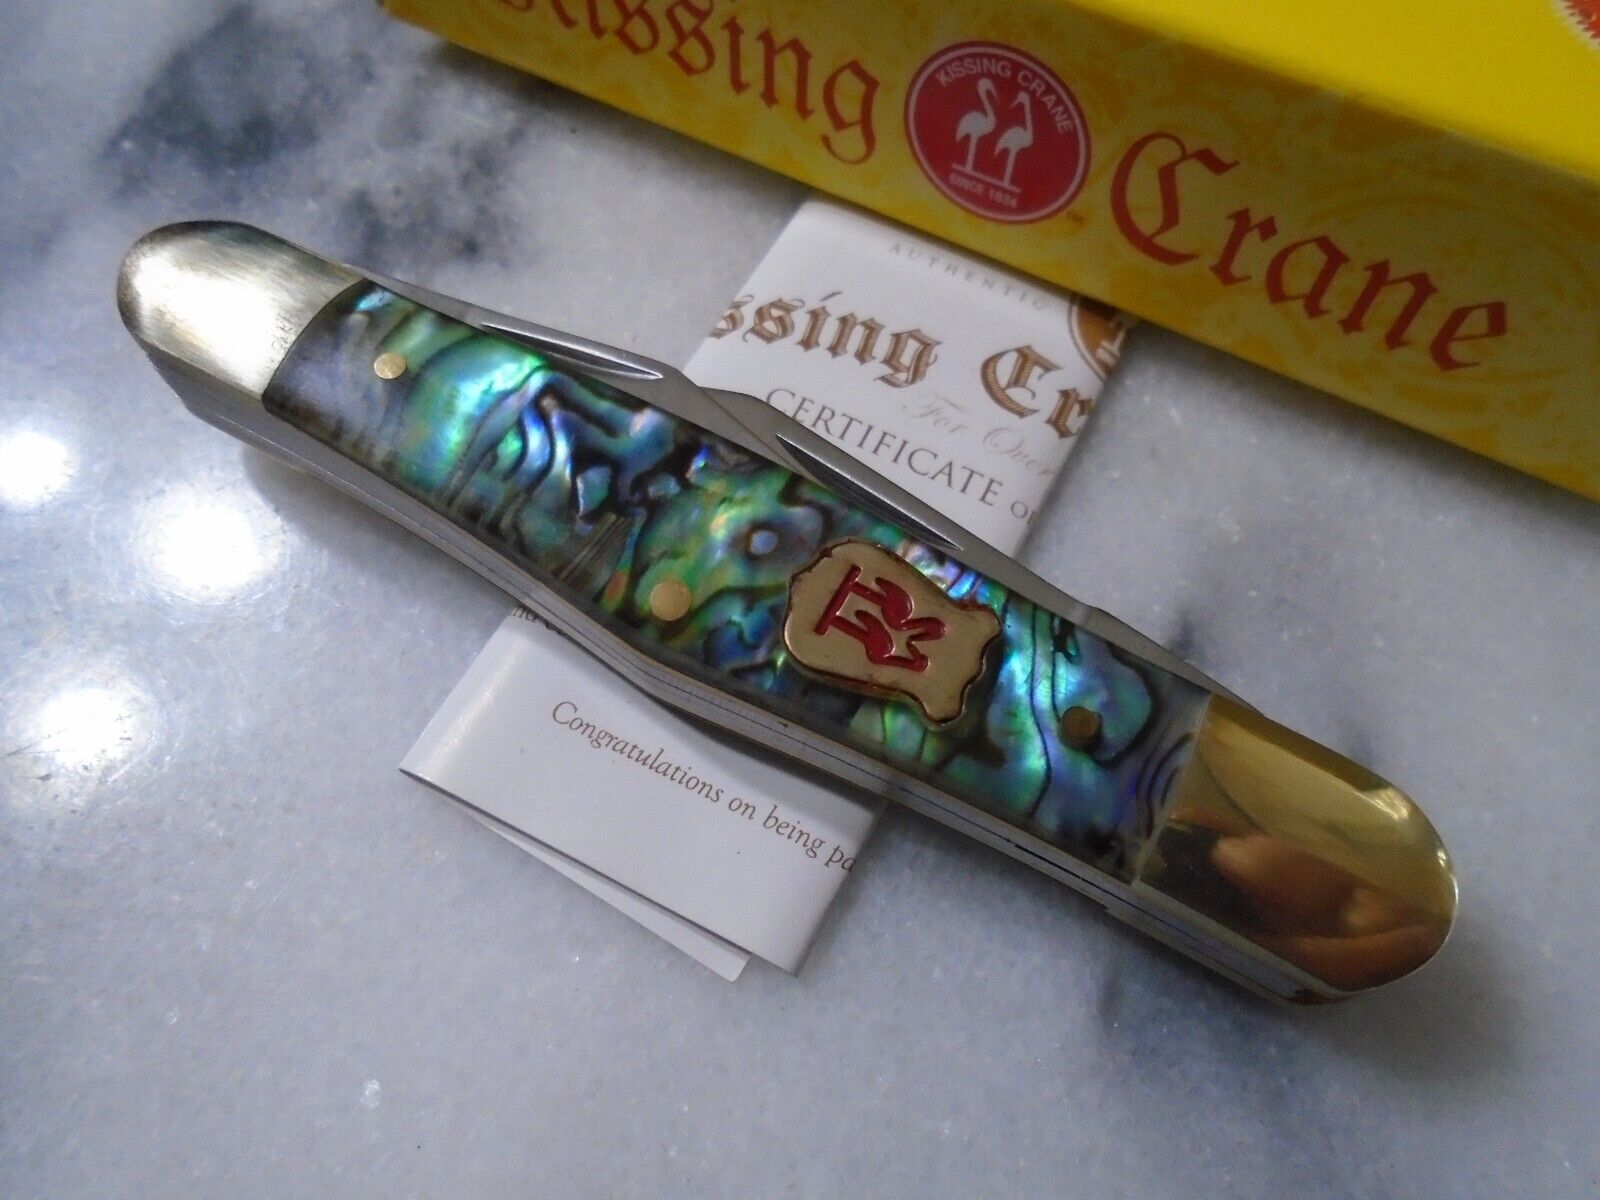 Kissing Crane Genuine Abalone 3 Blade Whittler Pocket Knife KC5515 3 1/2